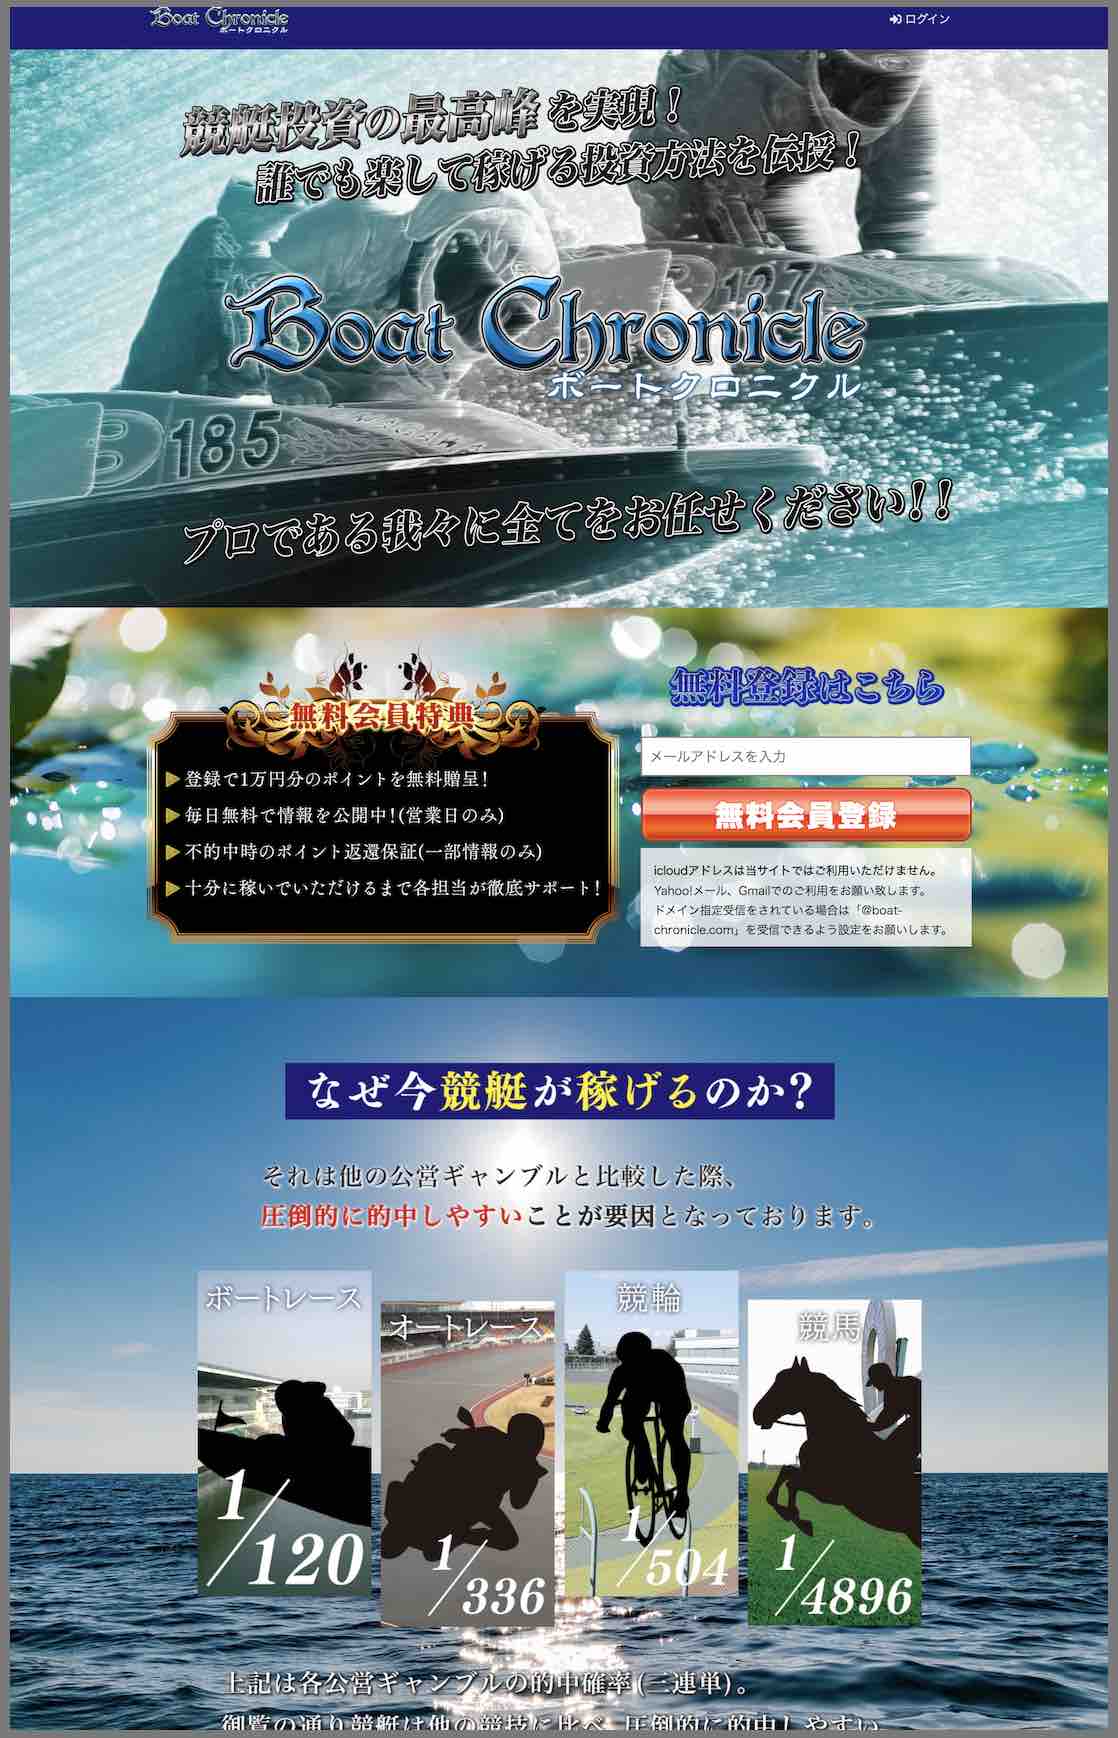 ボートクロニクルという競艇予想サイトの非会員TOP画像